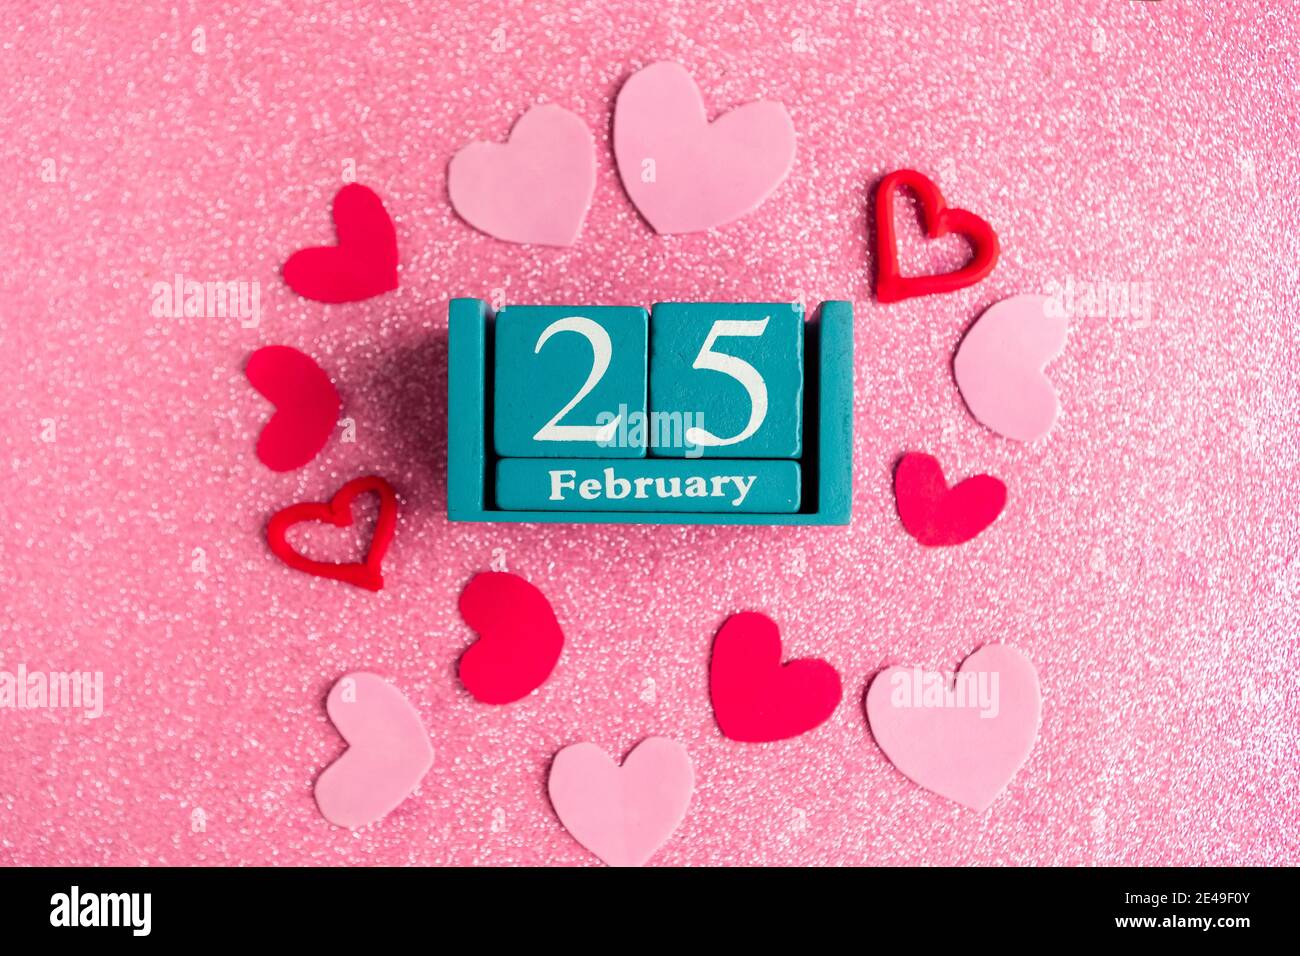 Février 25. Calendrier cube bleu avec mois et date et décorations sur fond rose scintillant. Banque D'Images